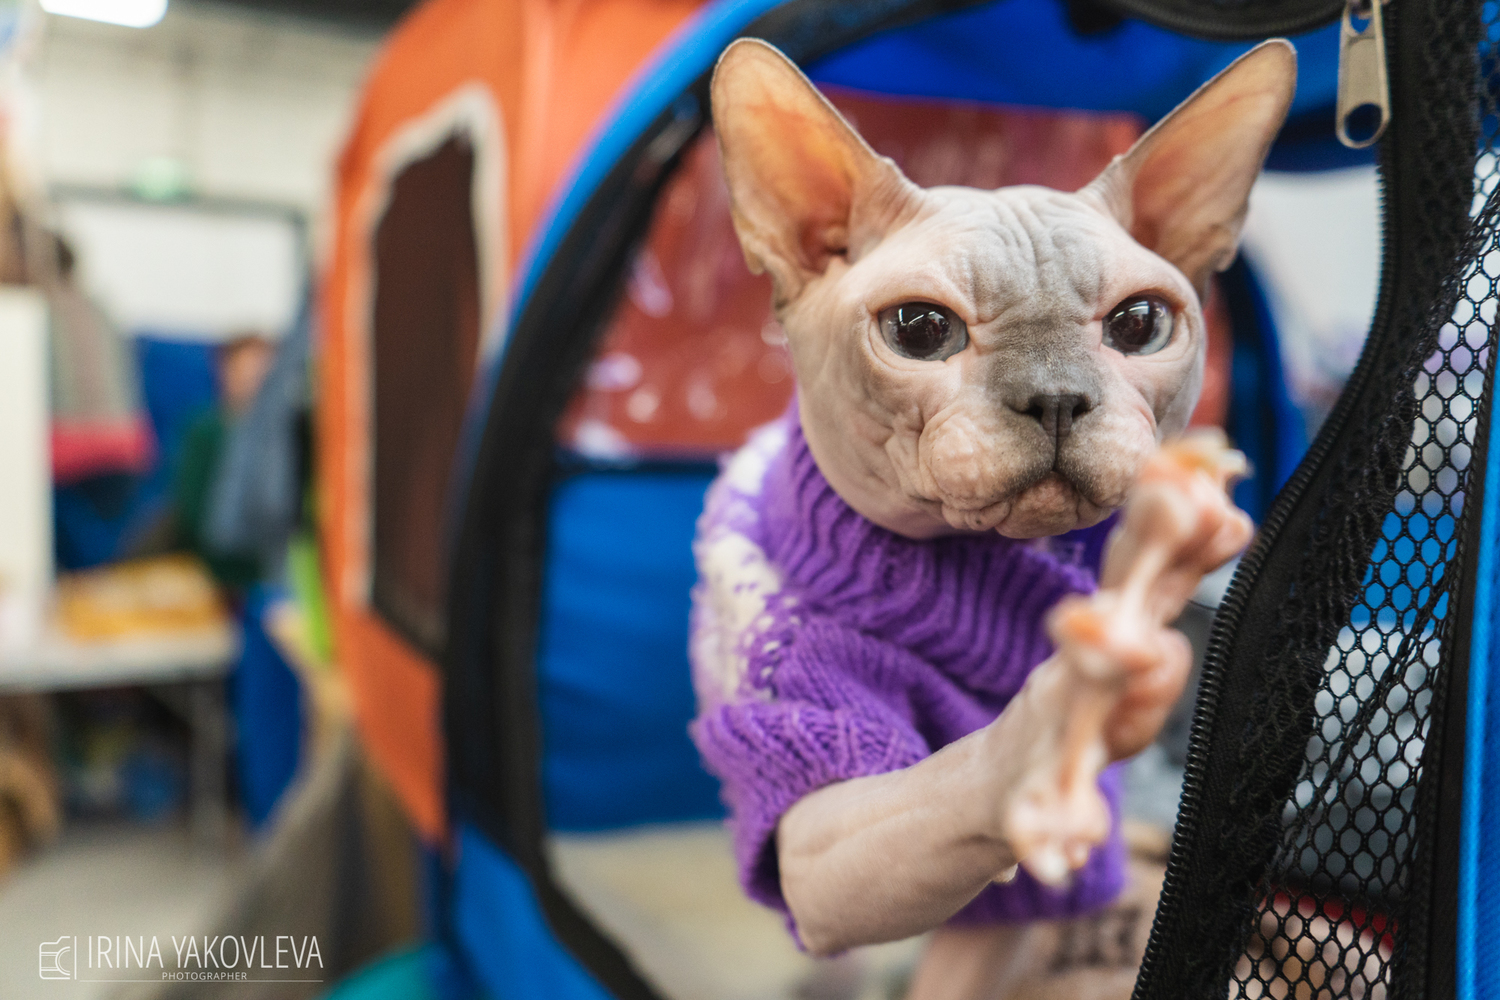 Кот-массажист и голая лапа: породистые кошки посмотрели на людей на выставке